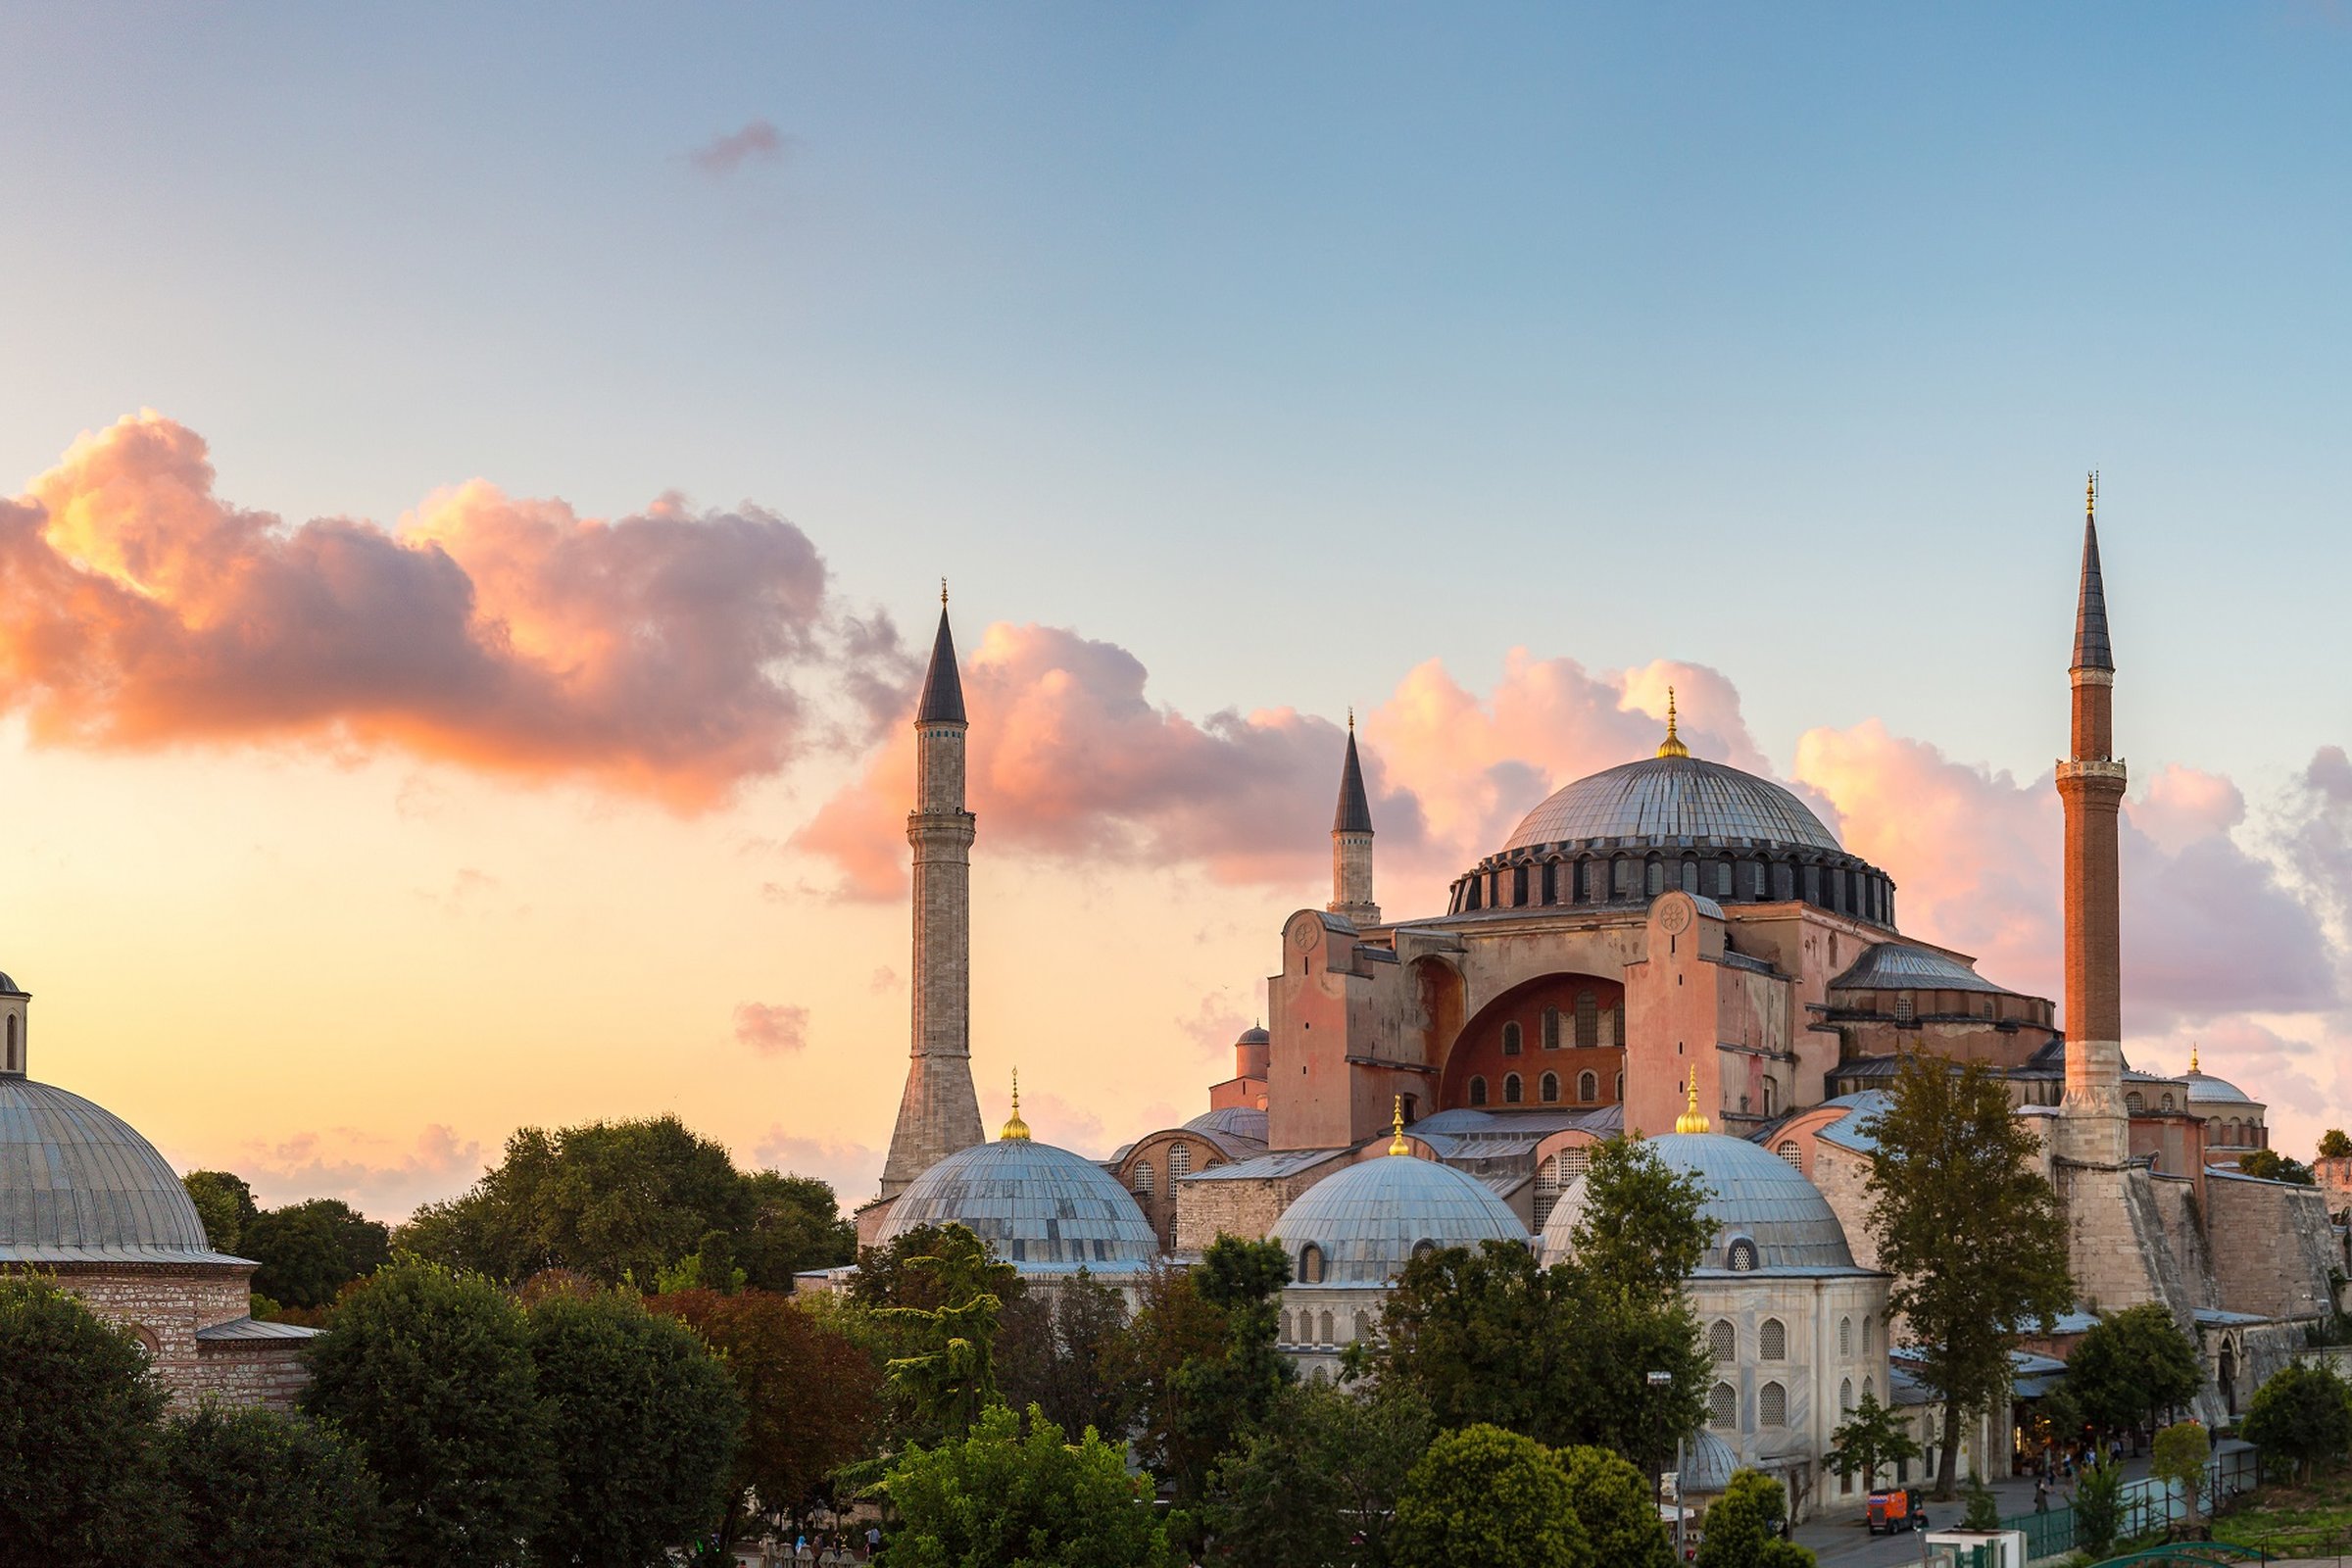 Requiem for my Hagia Sophia